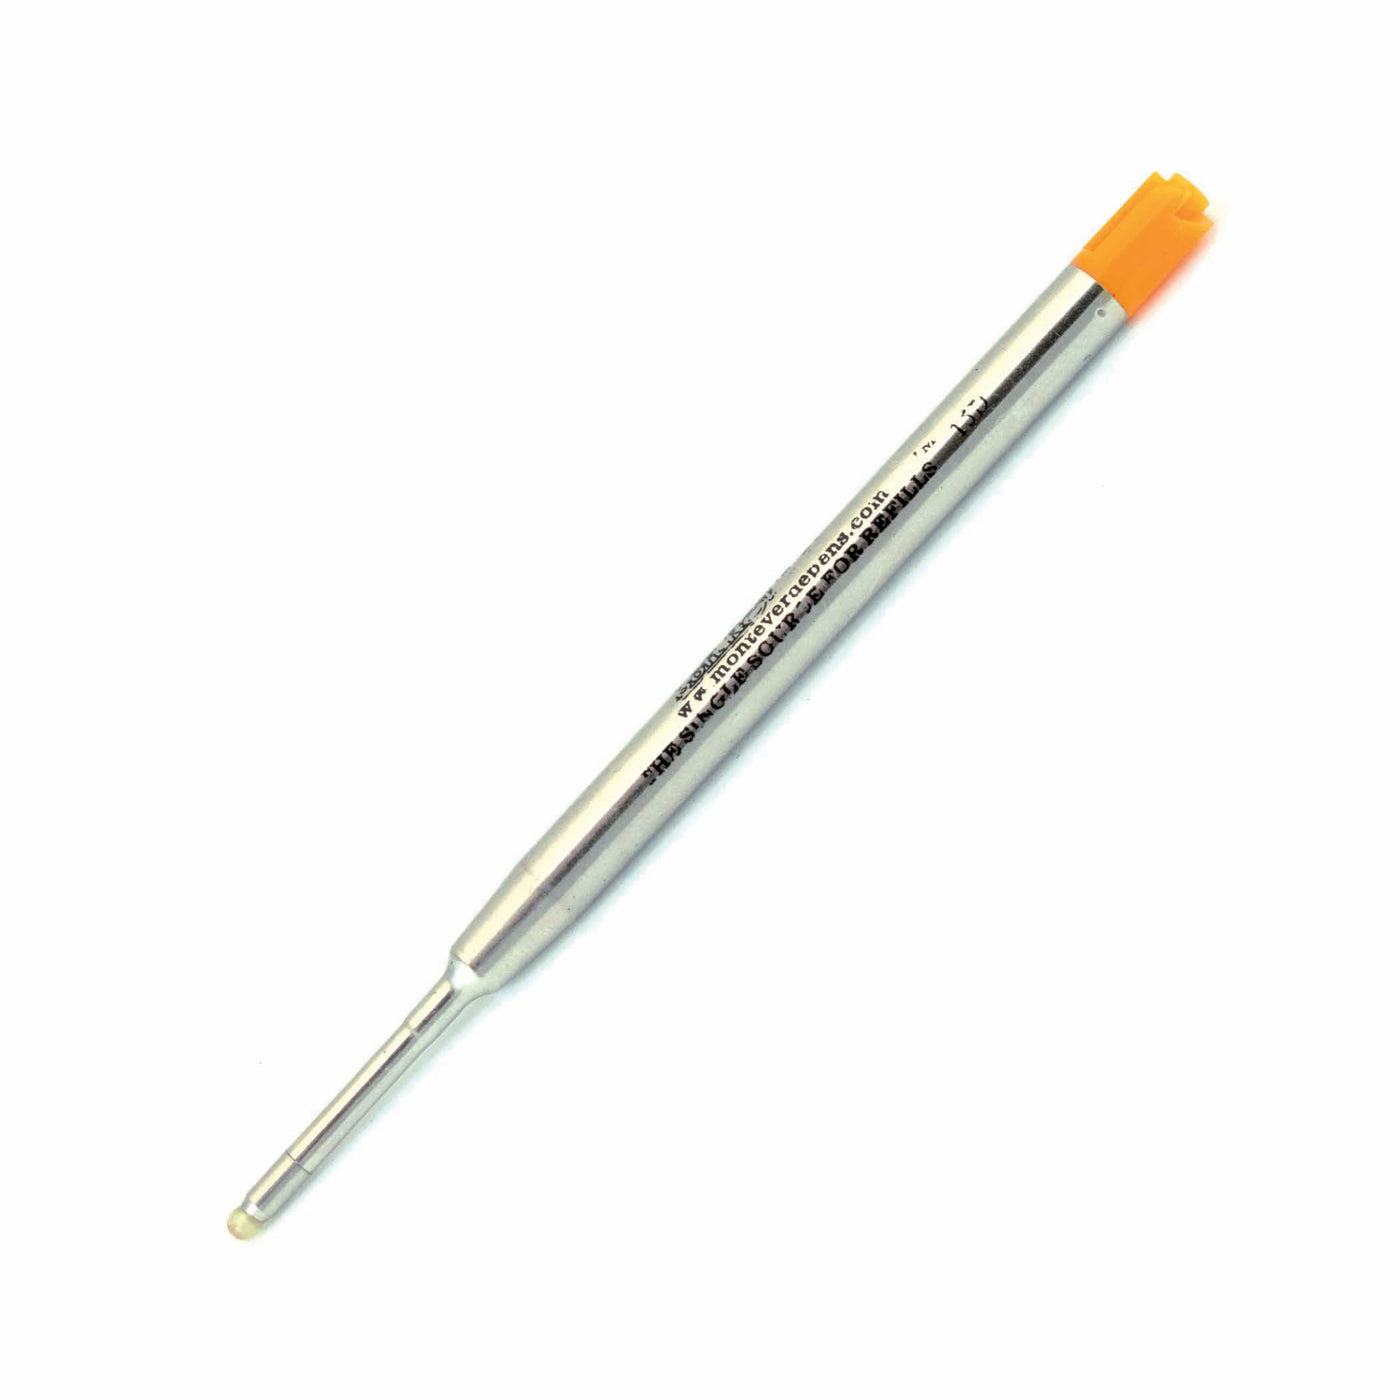 Monteverde Soft Roll Ballpoint Refill To Fit Parker Ballpoint Pens - 2 Pack#color_orange